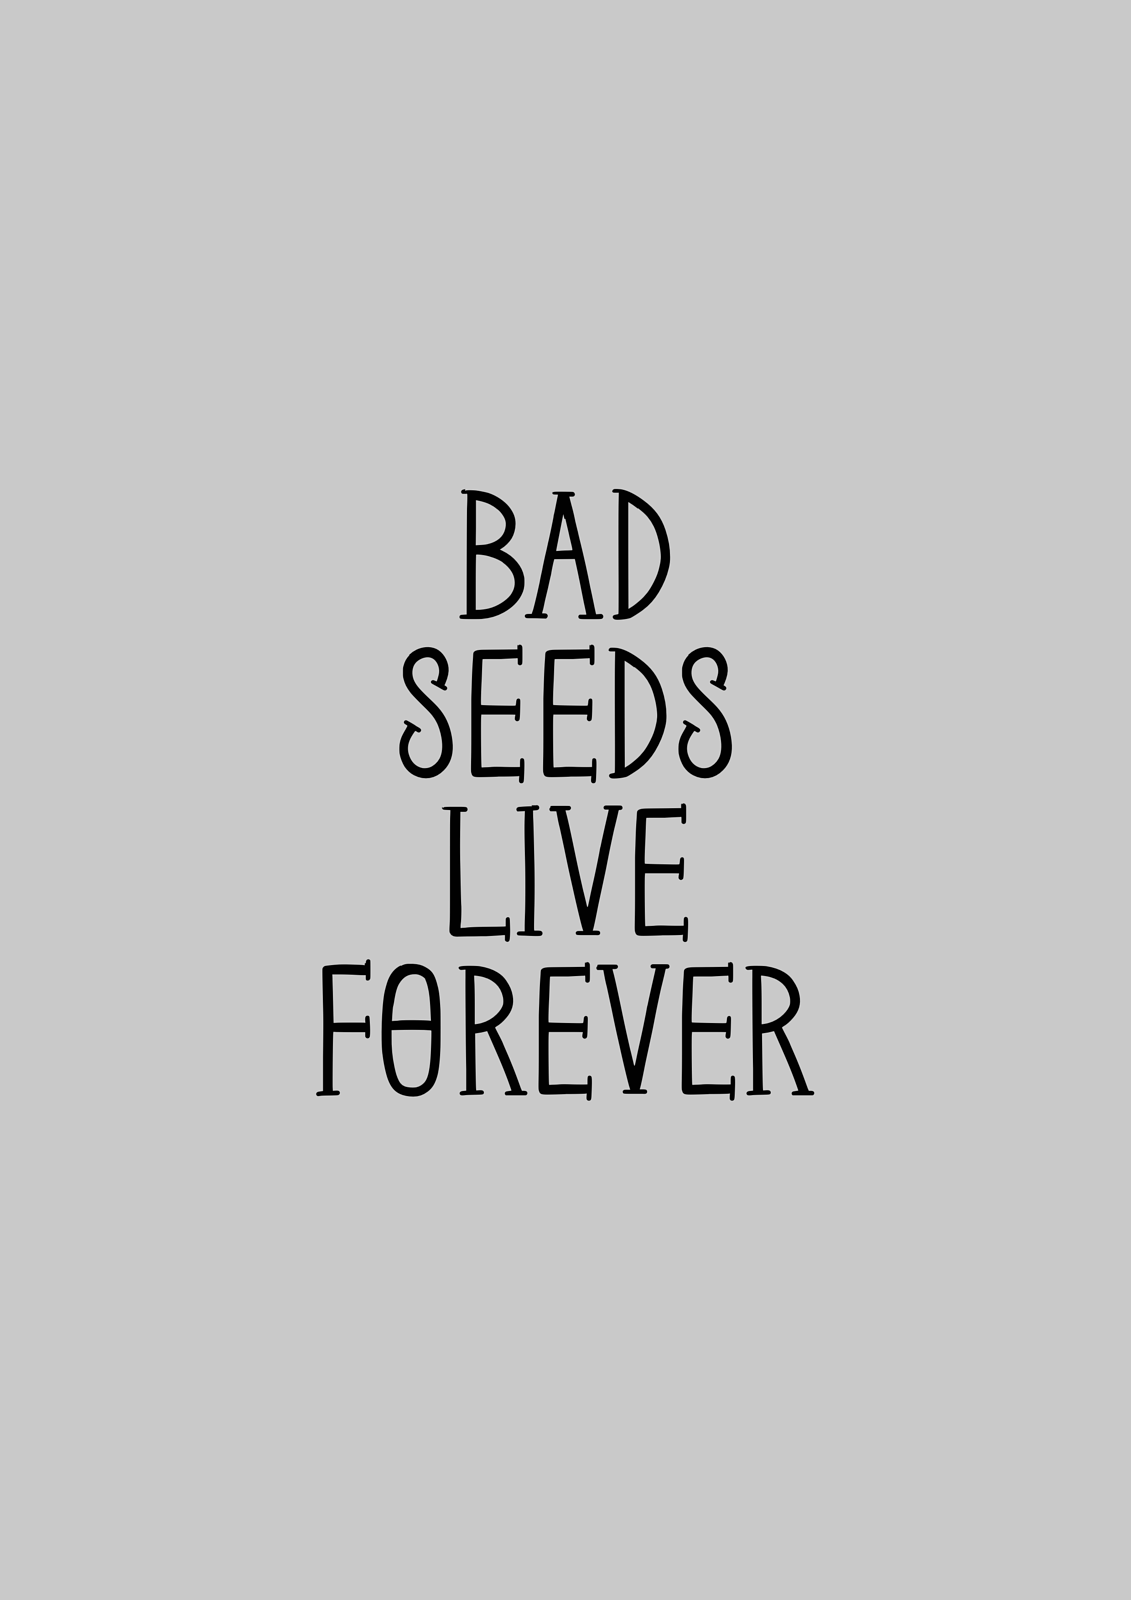 Bad seeds live forever print 